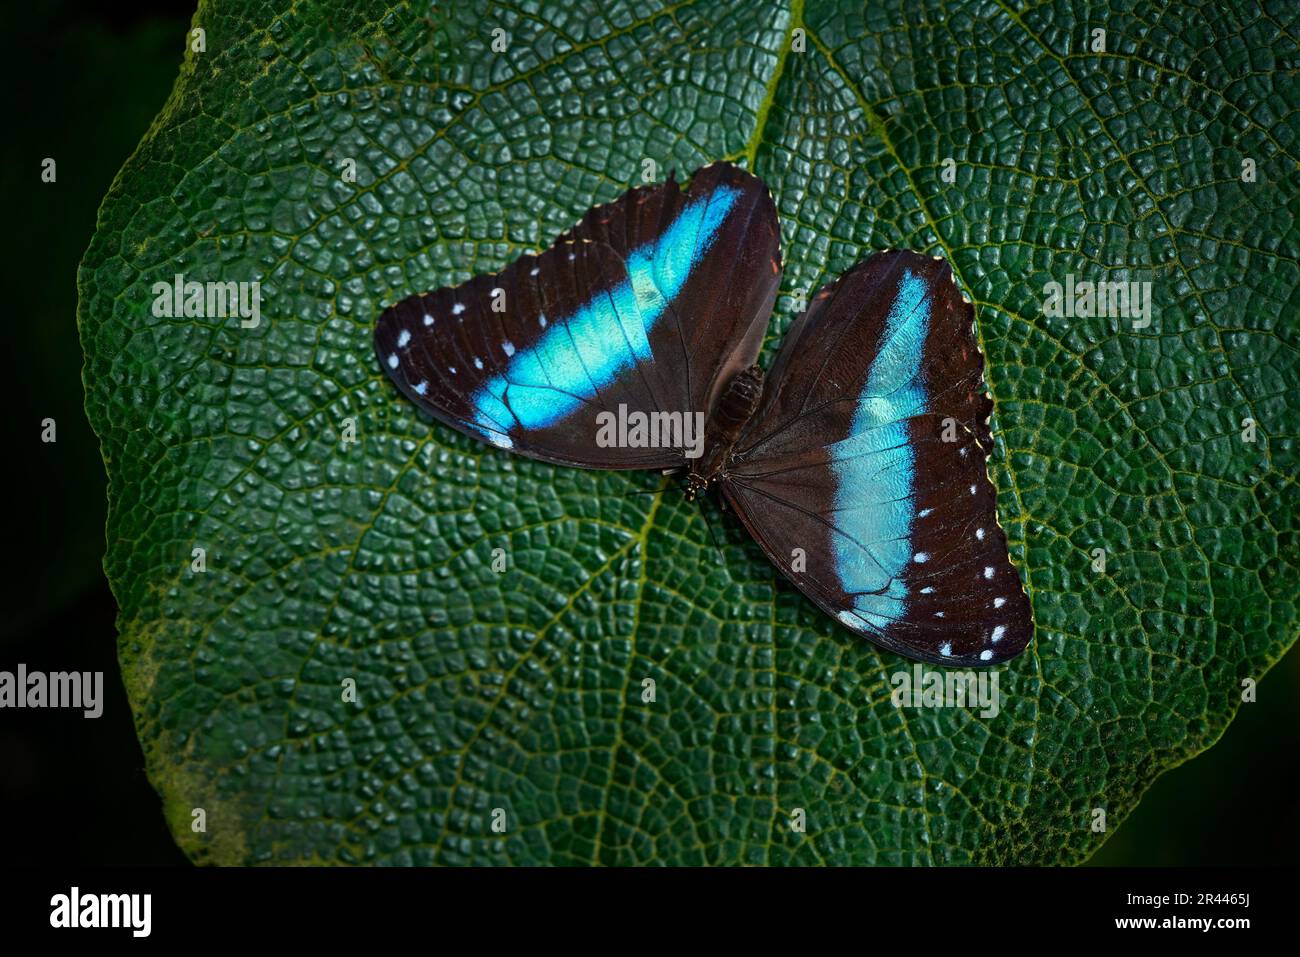 Schmetterling in Ecuador. Morpho achilles, Insekt auf Blütenlaub im natürlichen Lebensraum. Blauer Schmetterling in Südamerika. Natur der Tierwelt. Tropischer Butterfl Stockfoto